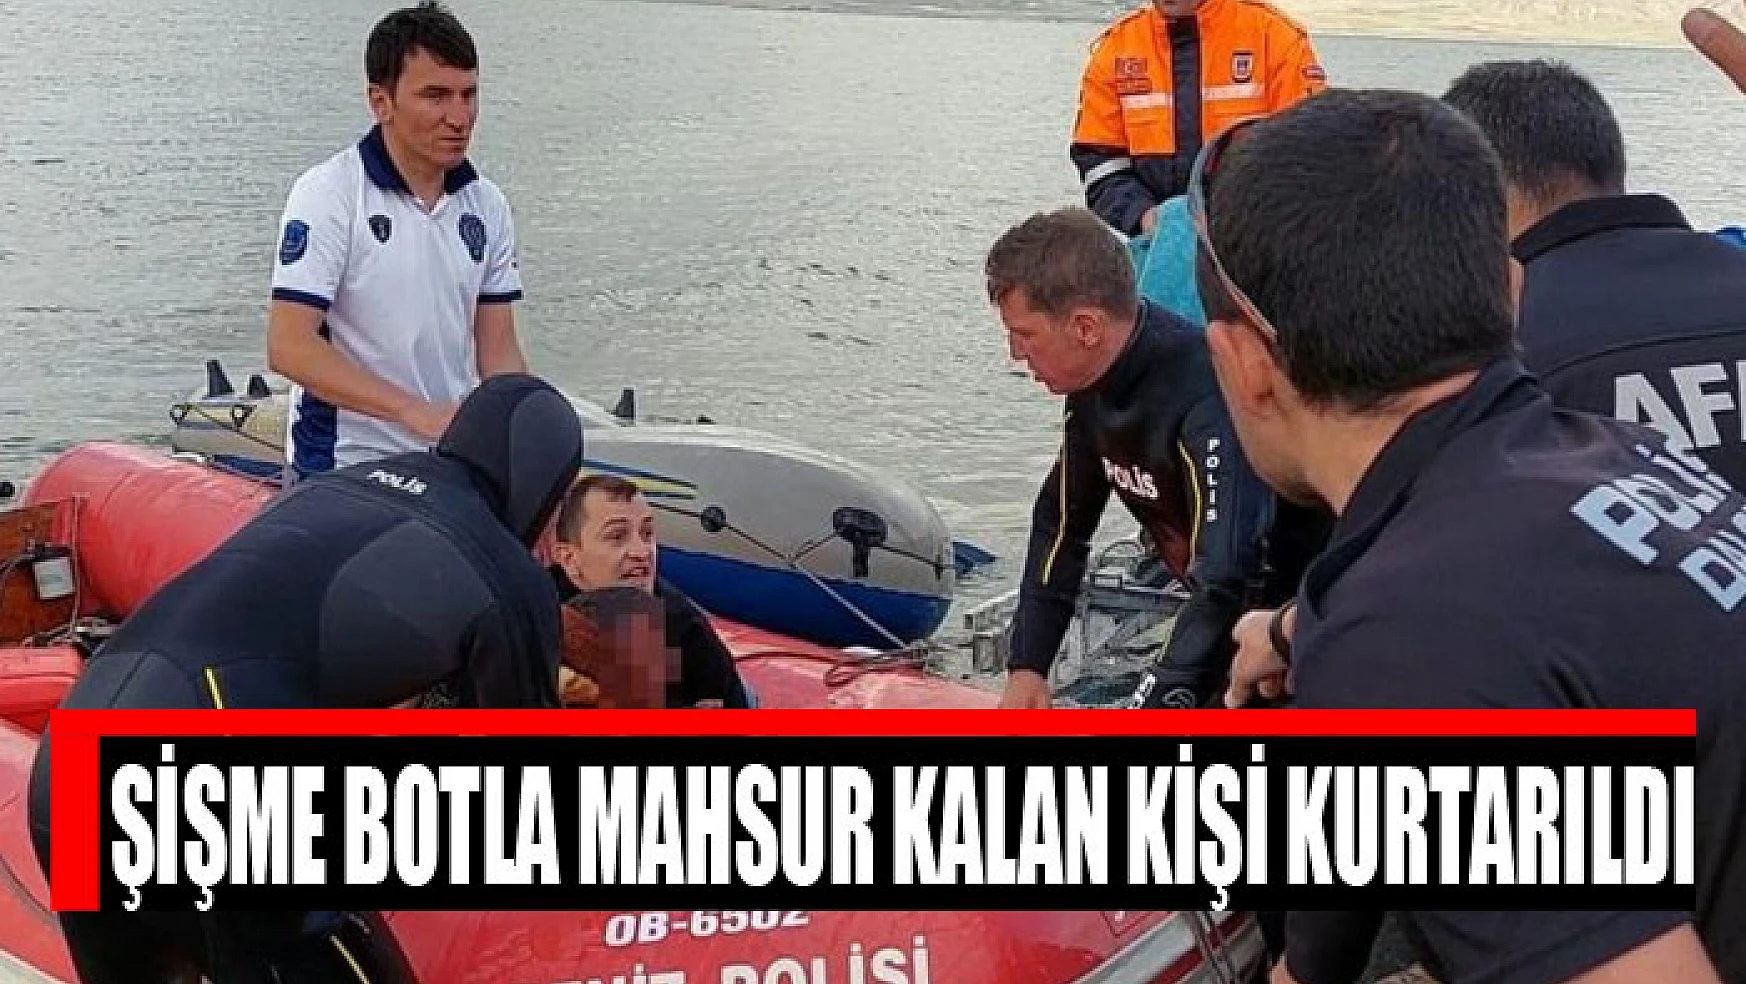 Şişme botla mahsur kalan kişi kurtarıldı